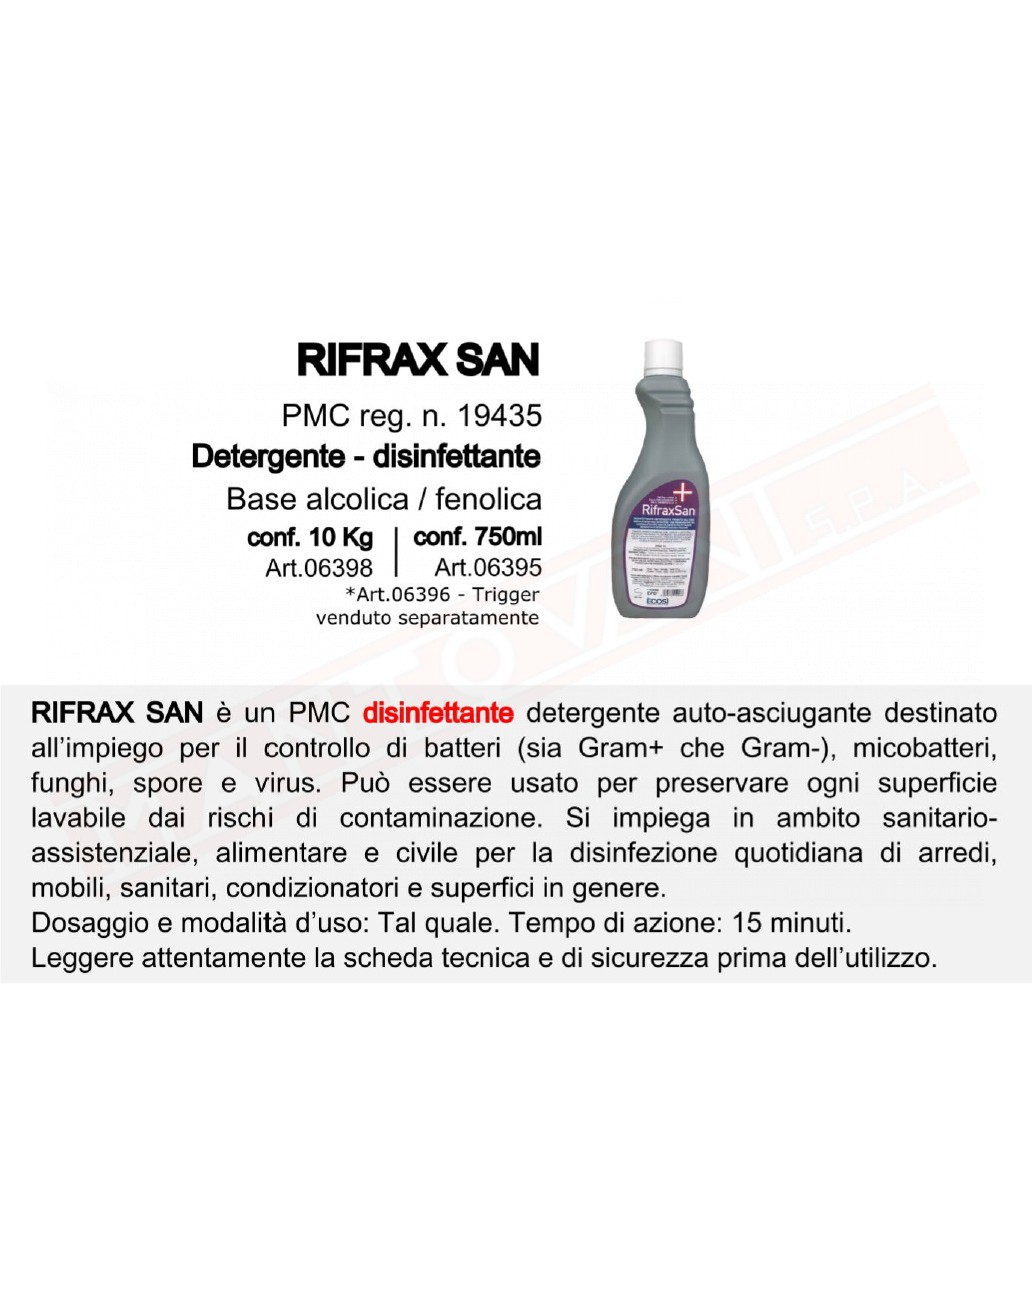 Rifrax San 750 ml disinfettante detergente presidio medico chirurgico autoasciugante senza srpuzzino da acquistare sep.